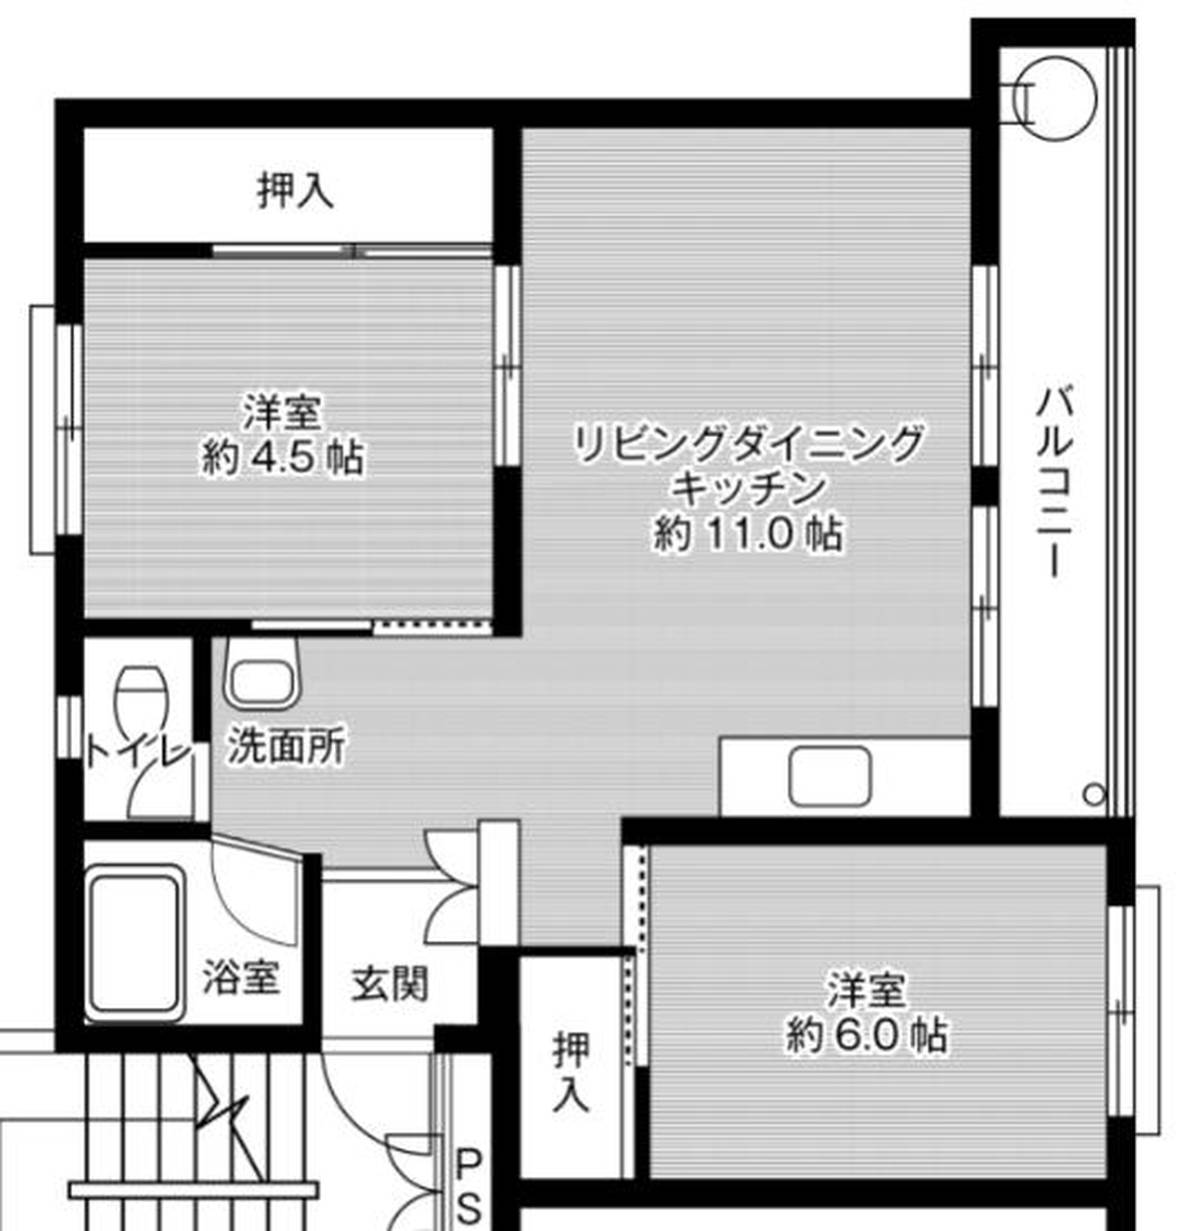 2LDK floorplan of Village House Kushibiki in Hachinohe-shi